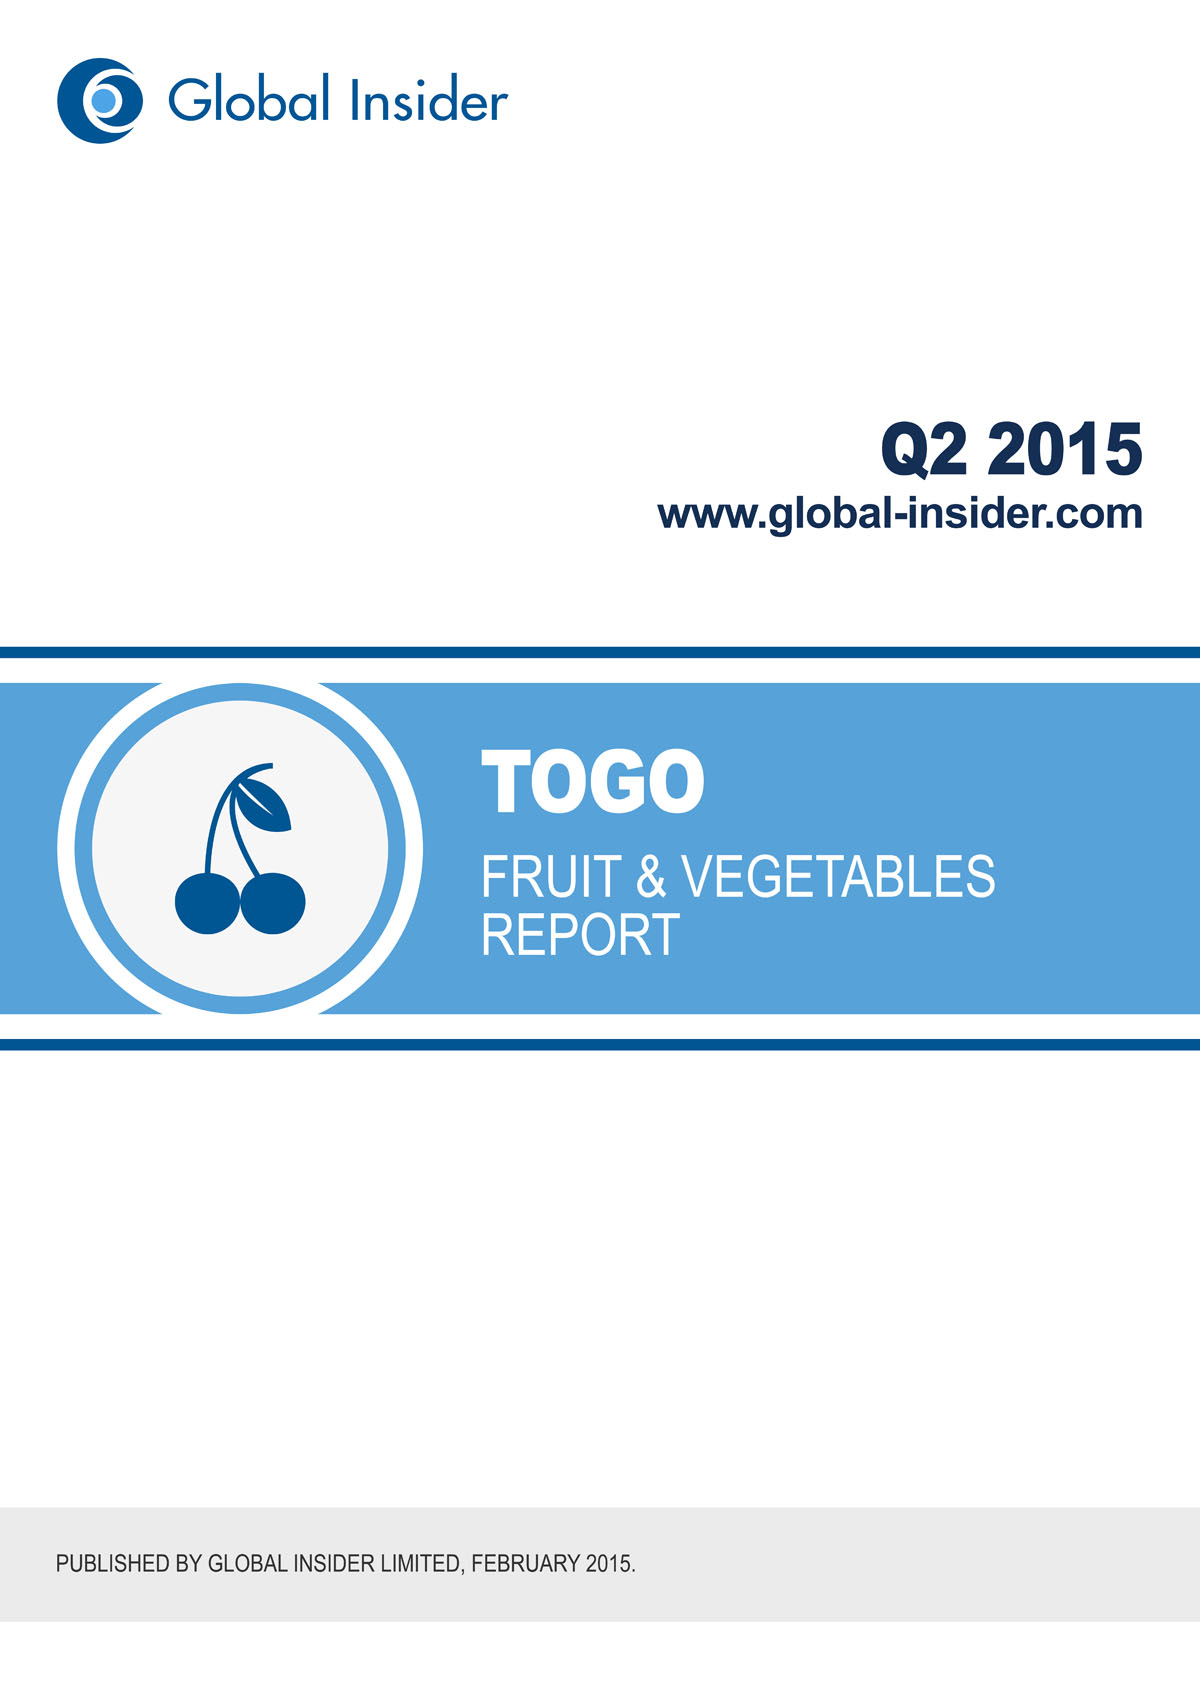 Togo Fruit & Vegetables Report